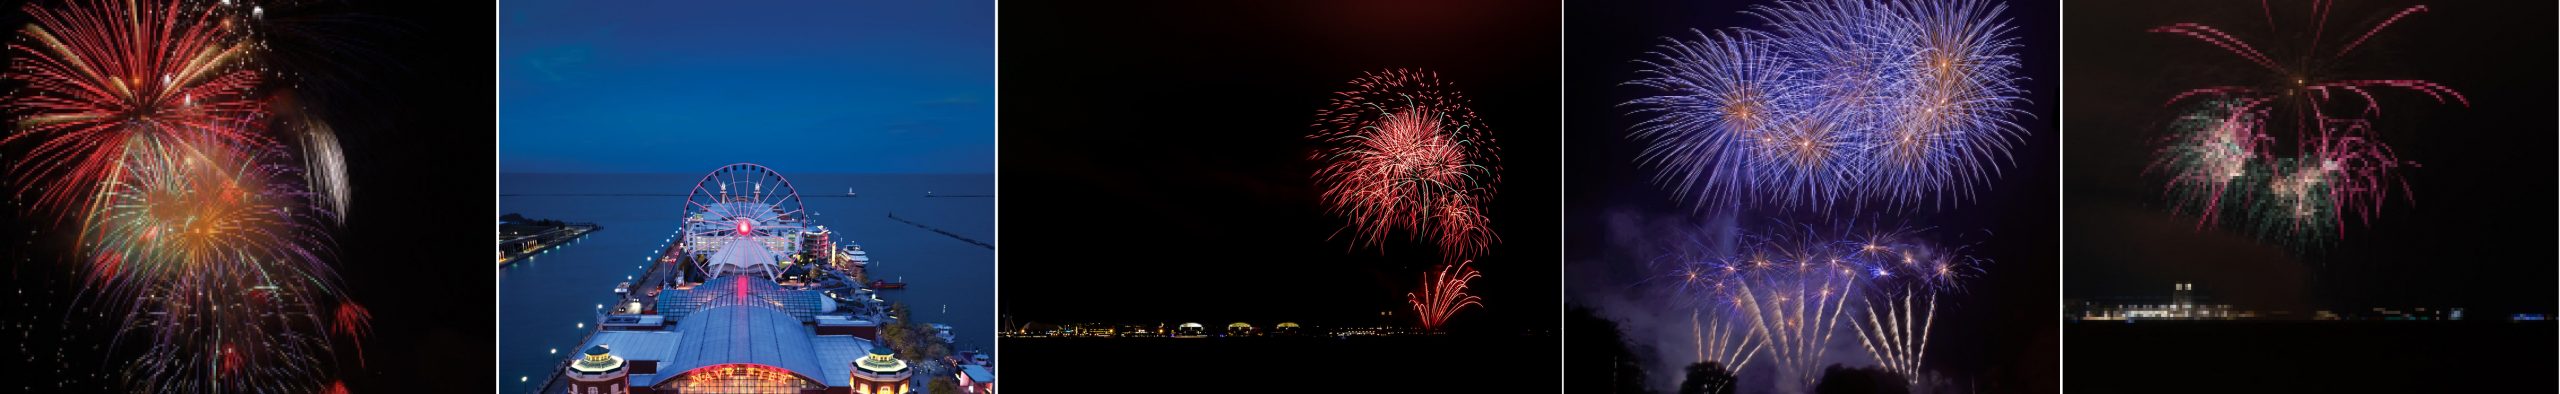 Chicago Fireworks Navy Pier